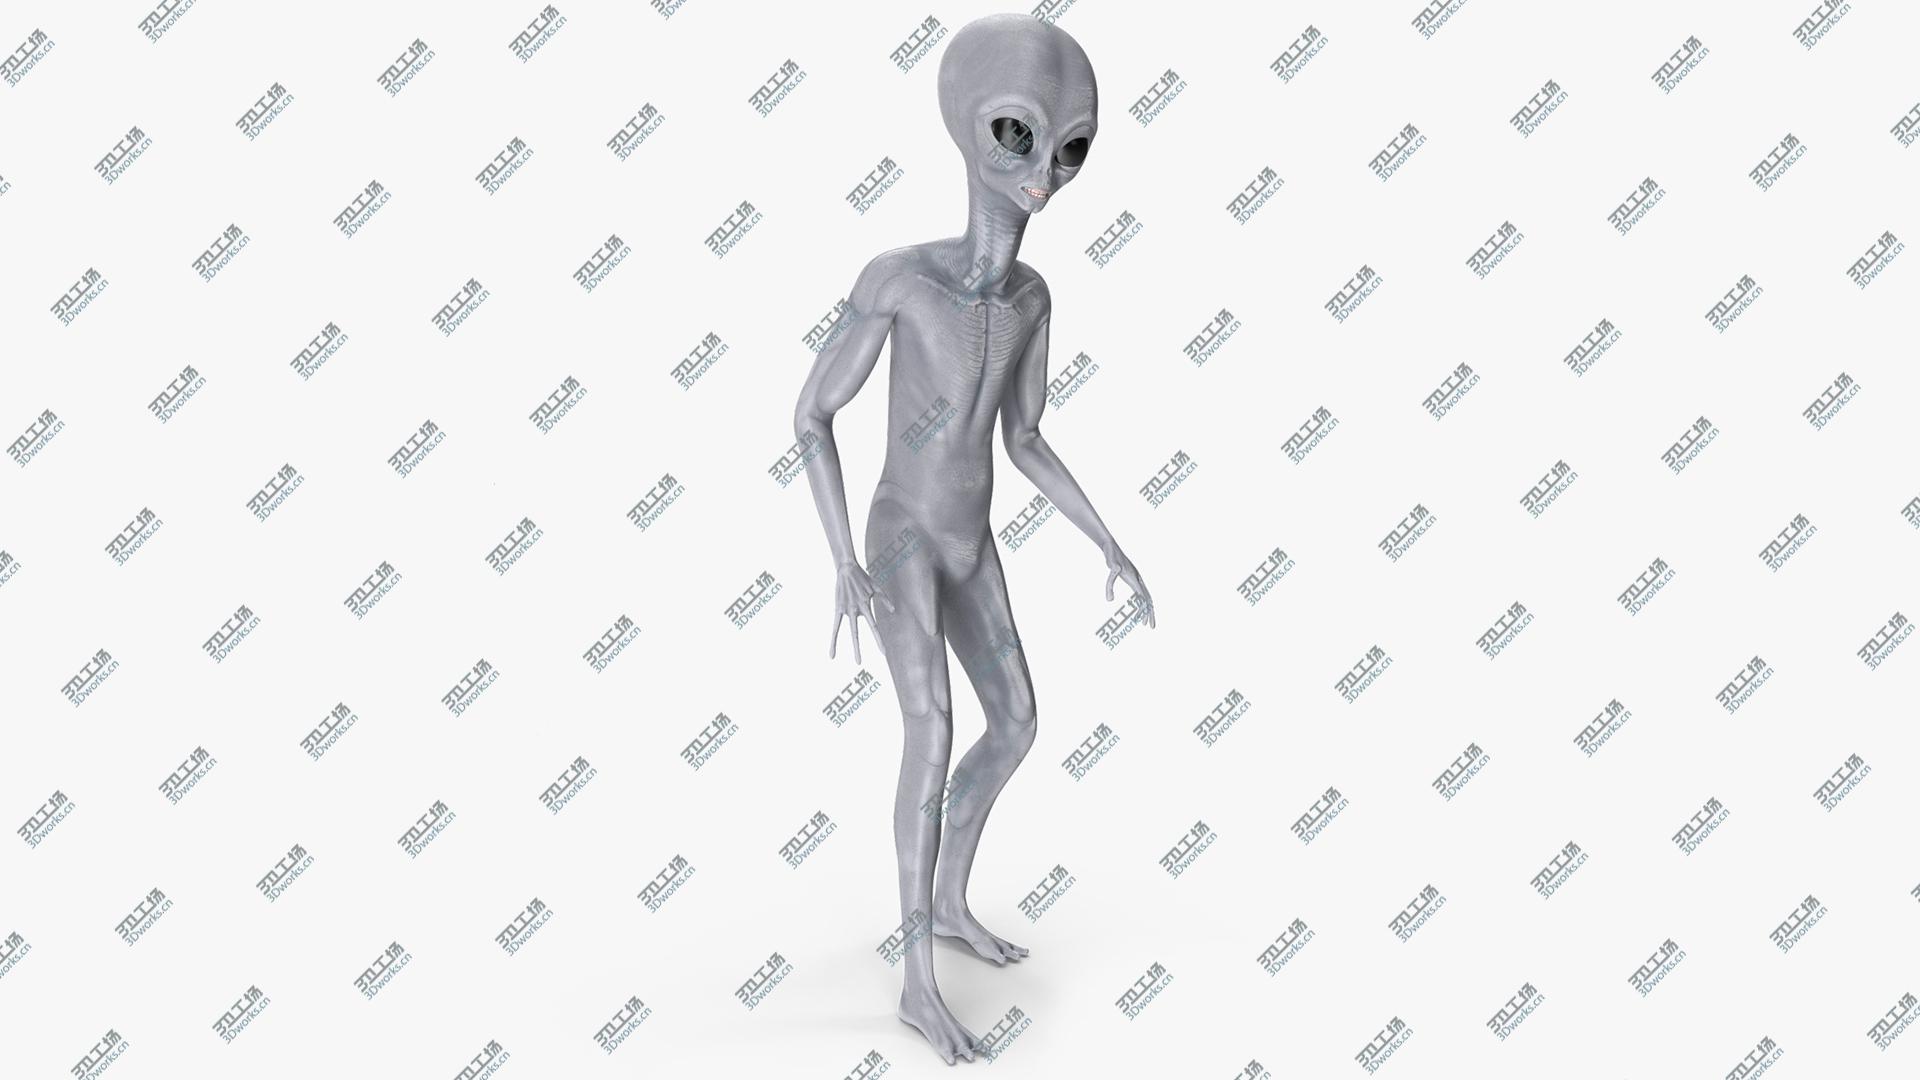 images/goods_img/202104093/3D Alien Rigged model/1.jpg